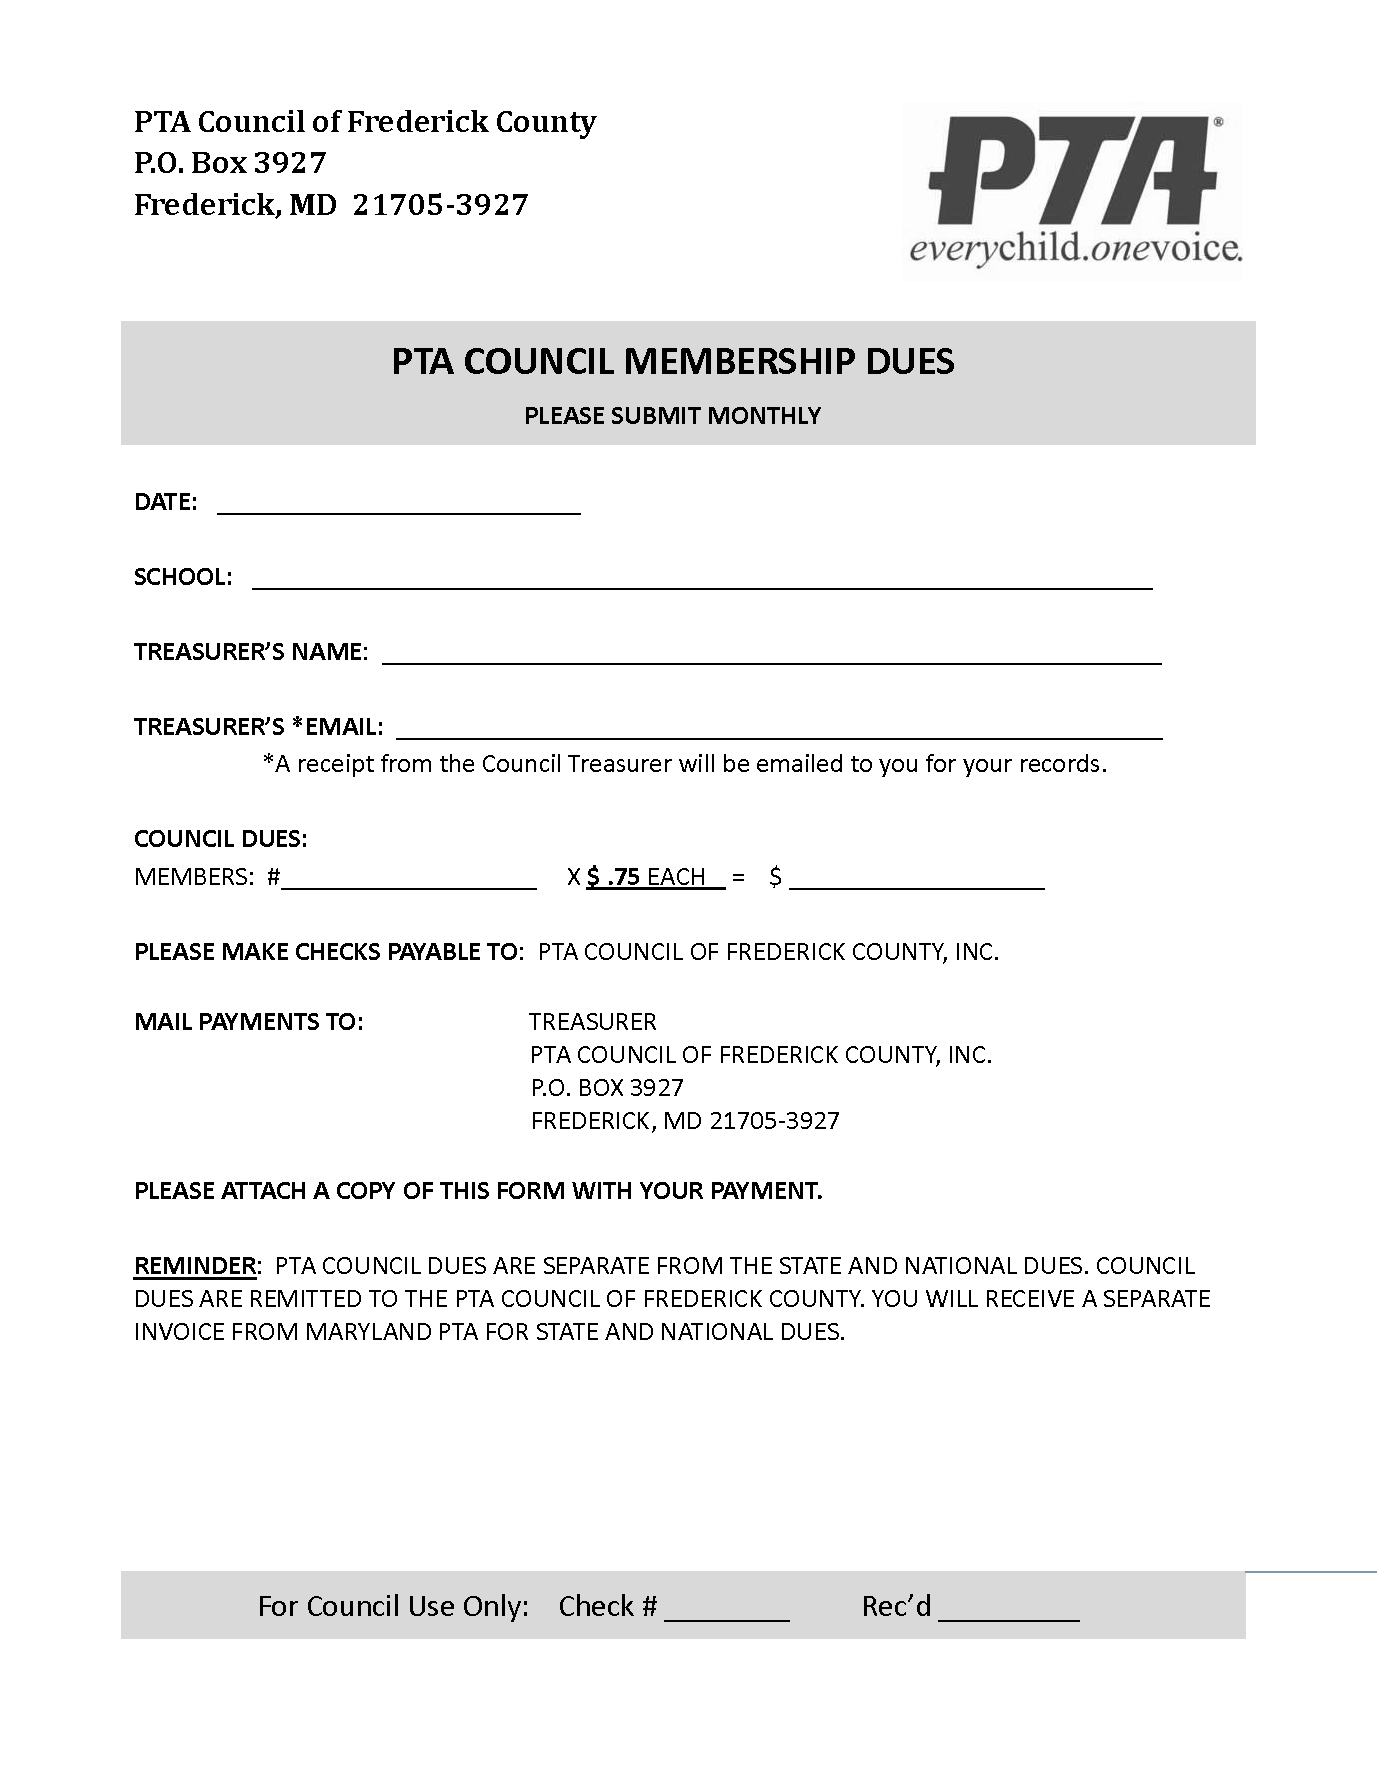 Council Dues Payment Form